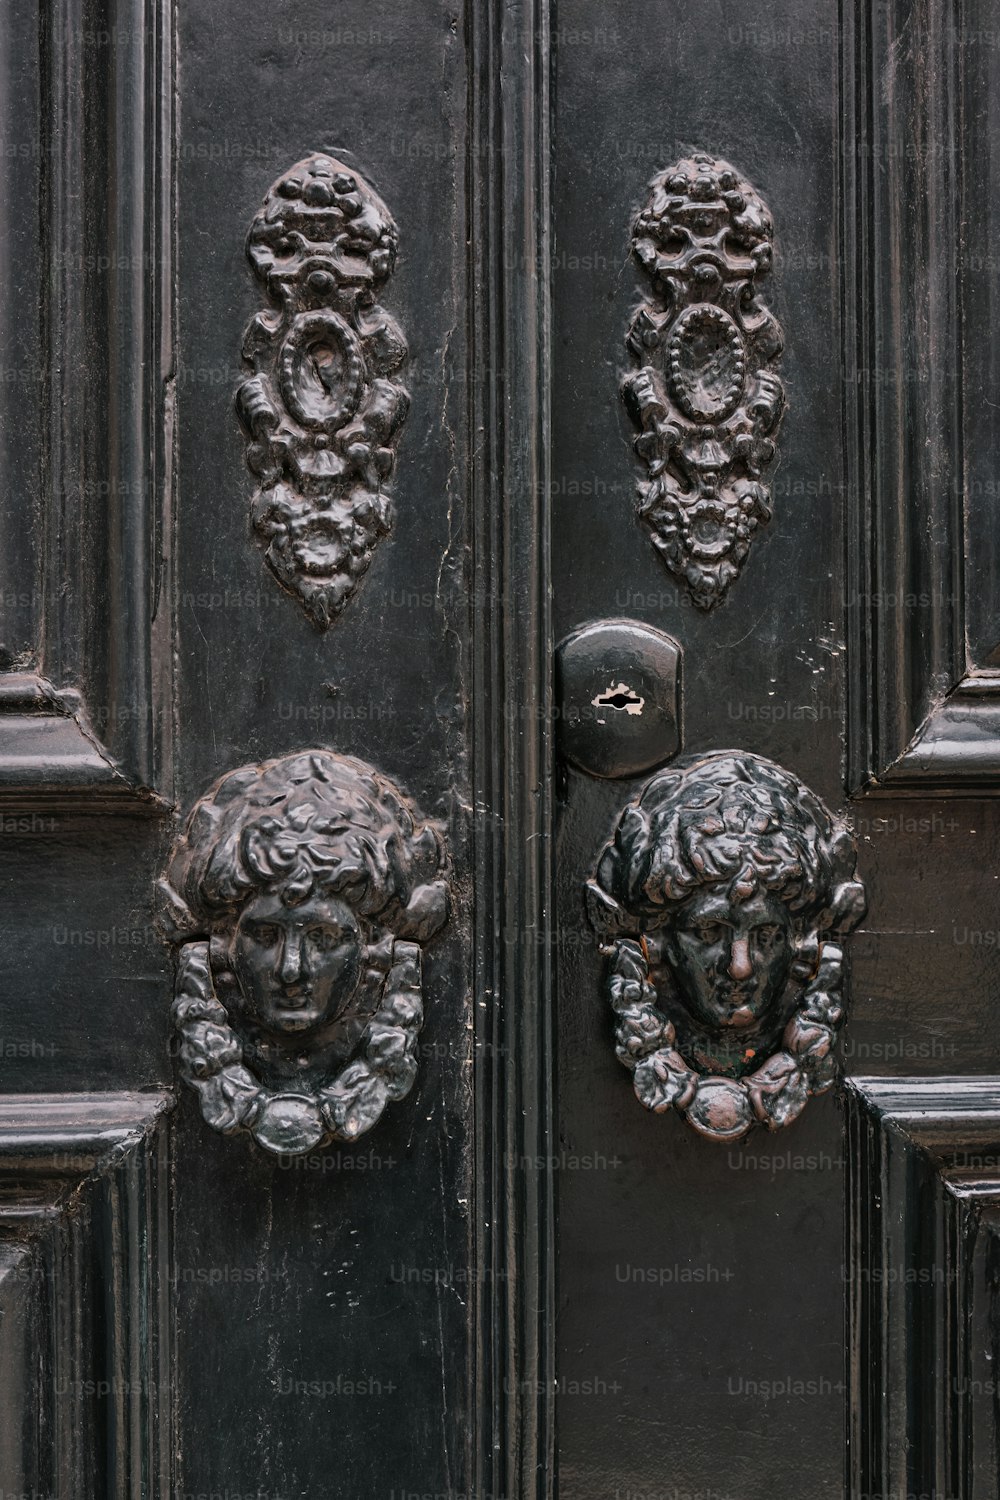 Un primer plano de una puerta con dos leones